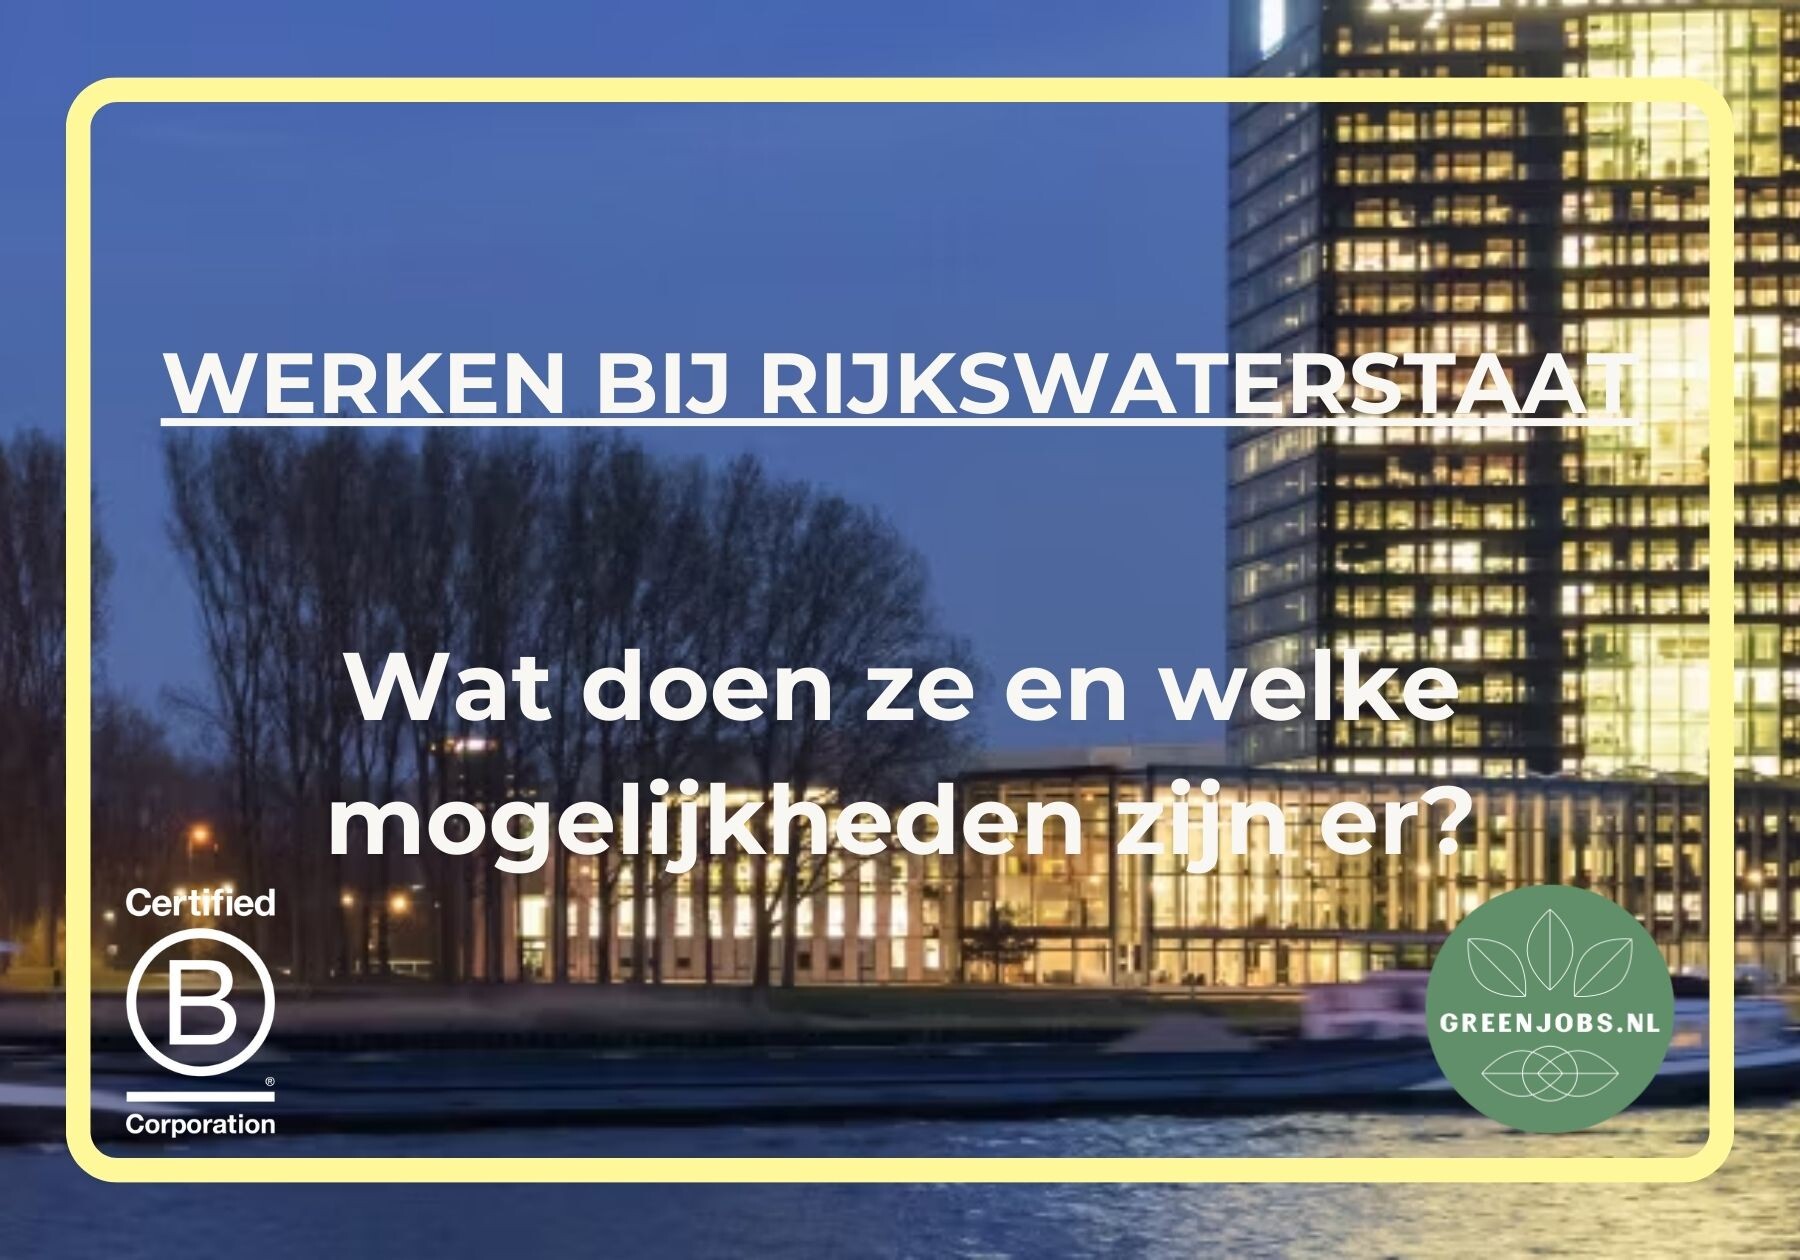 Werken bij Rijkswaterstaat!